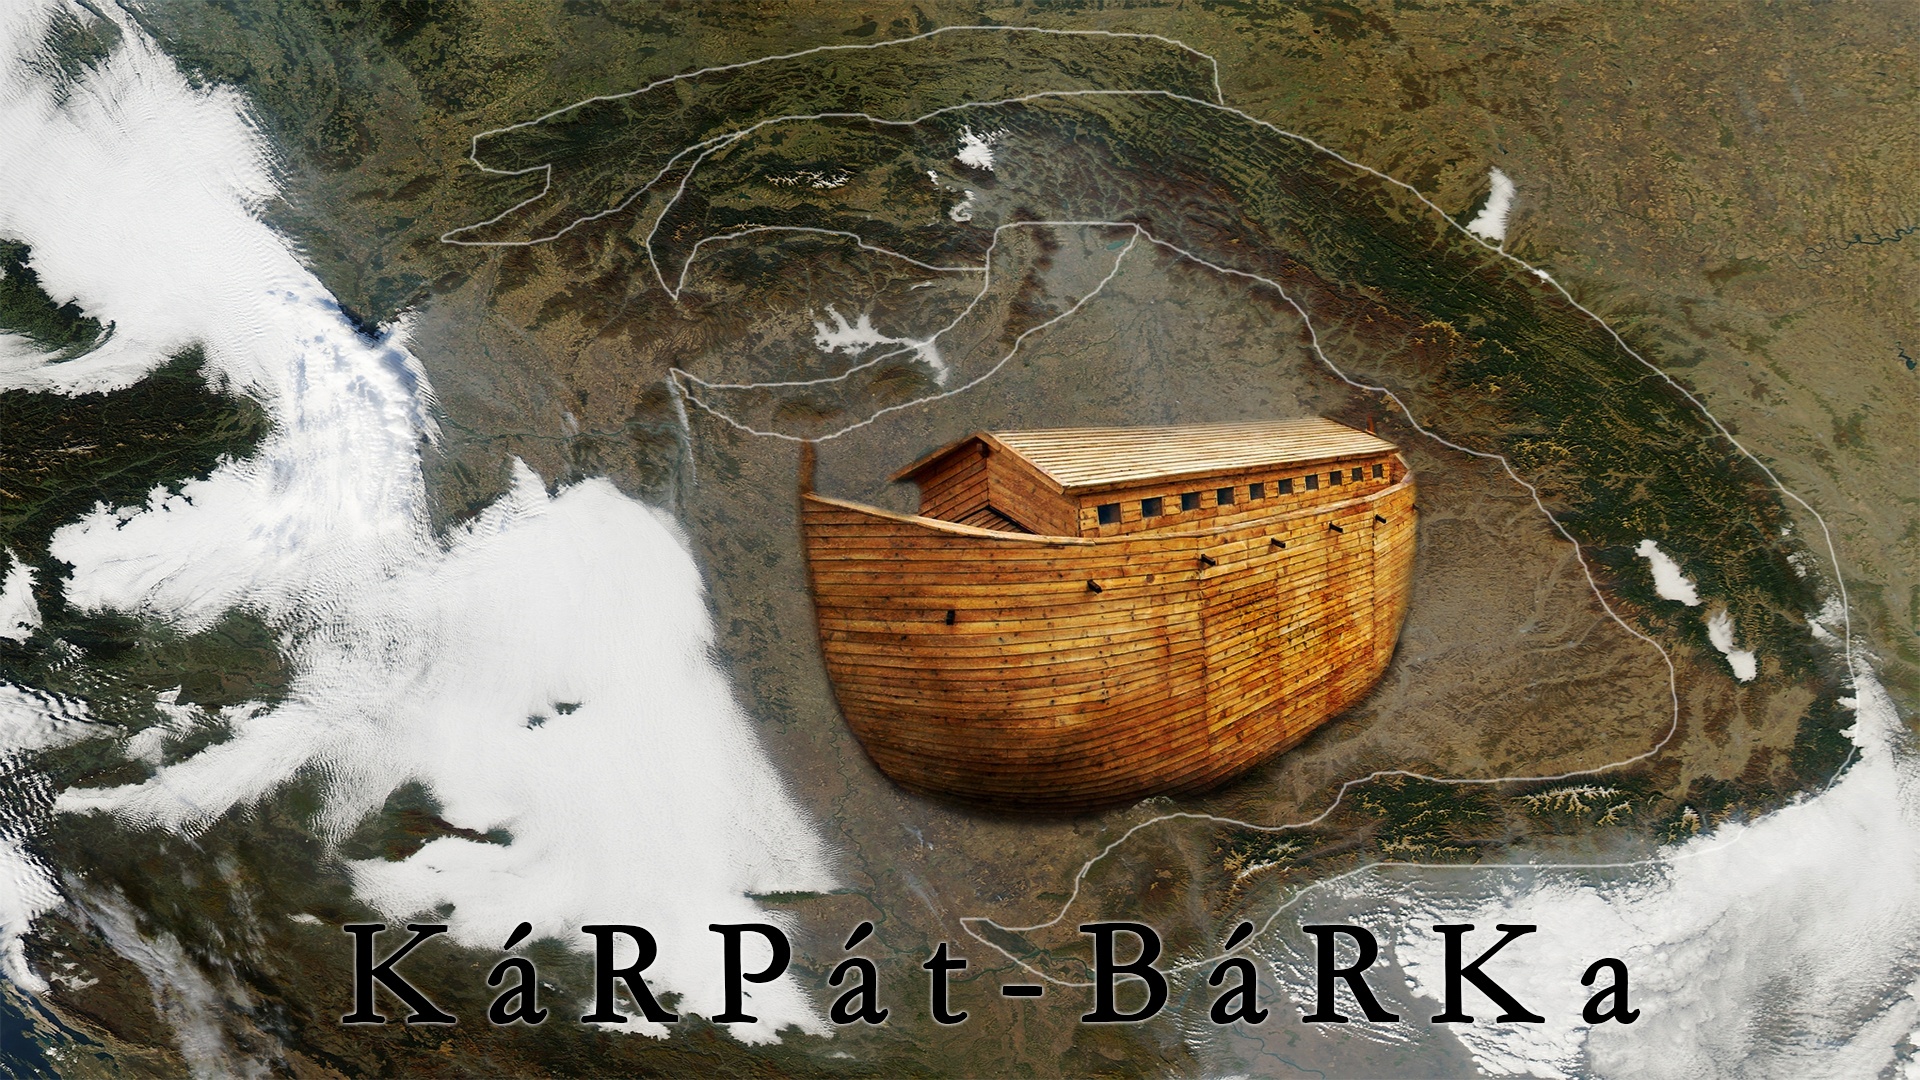 barka - karpat 02 (1).jpg